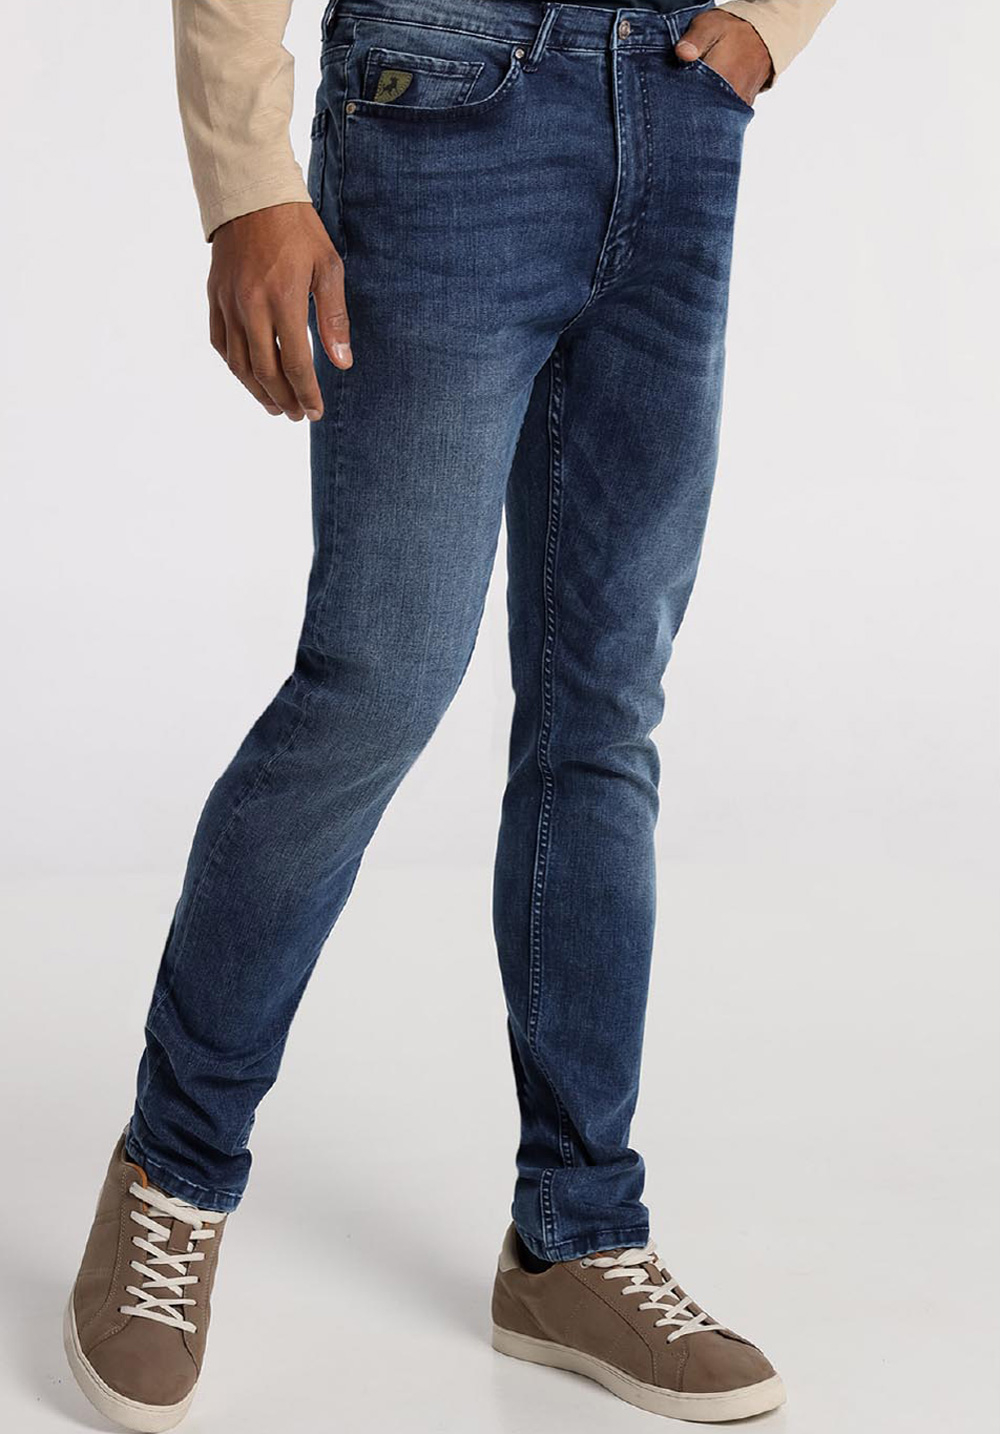 Lois pantalones vaqueros de hombre Robin comfort slim 10191/955 azul medio